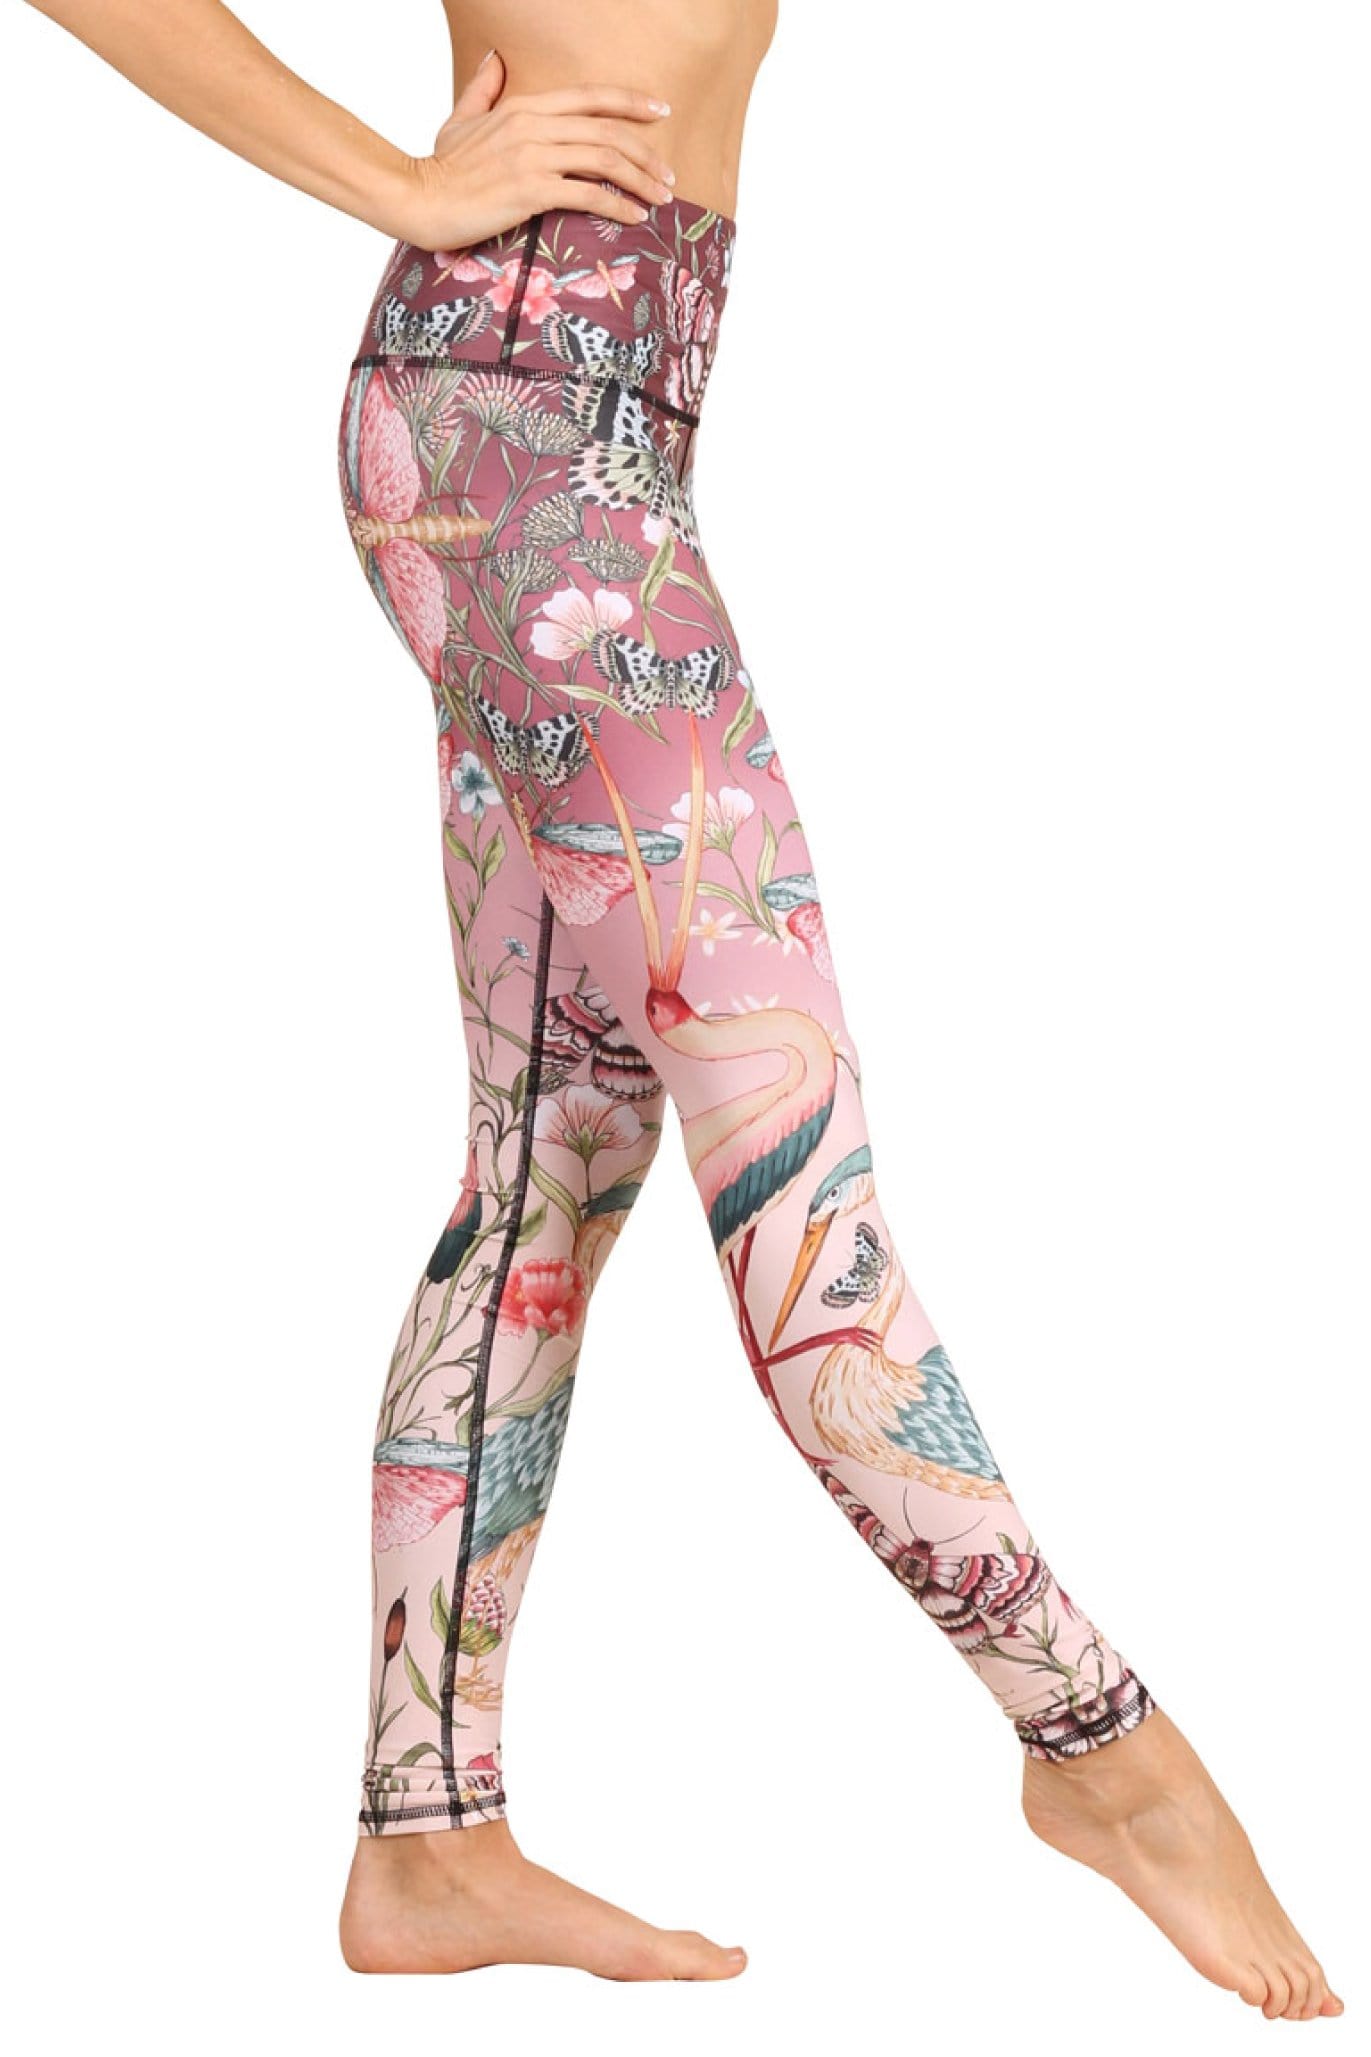 Pink Tie Dye Women Leggings Side Pockets, Printed Yoga Pants Graphic W –  Starcove Fashion